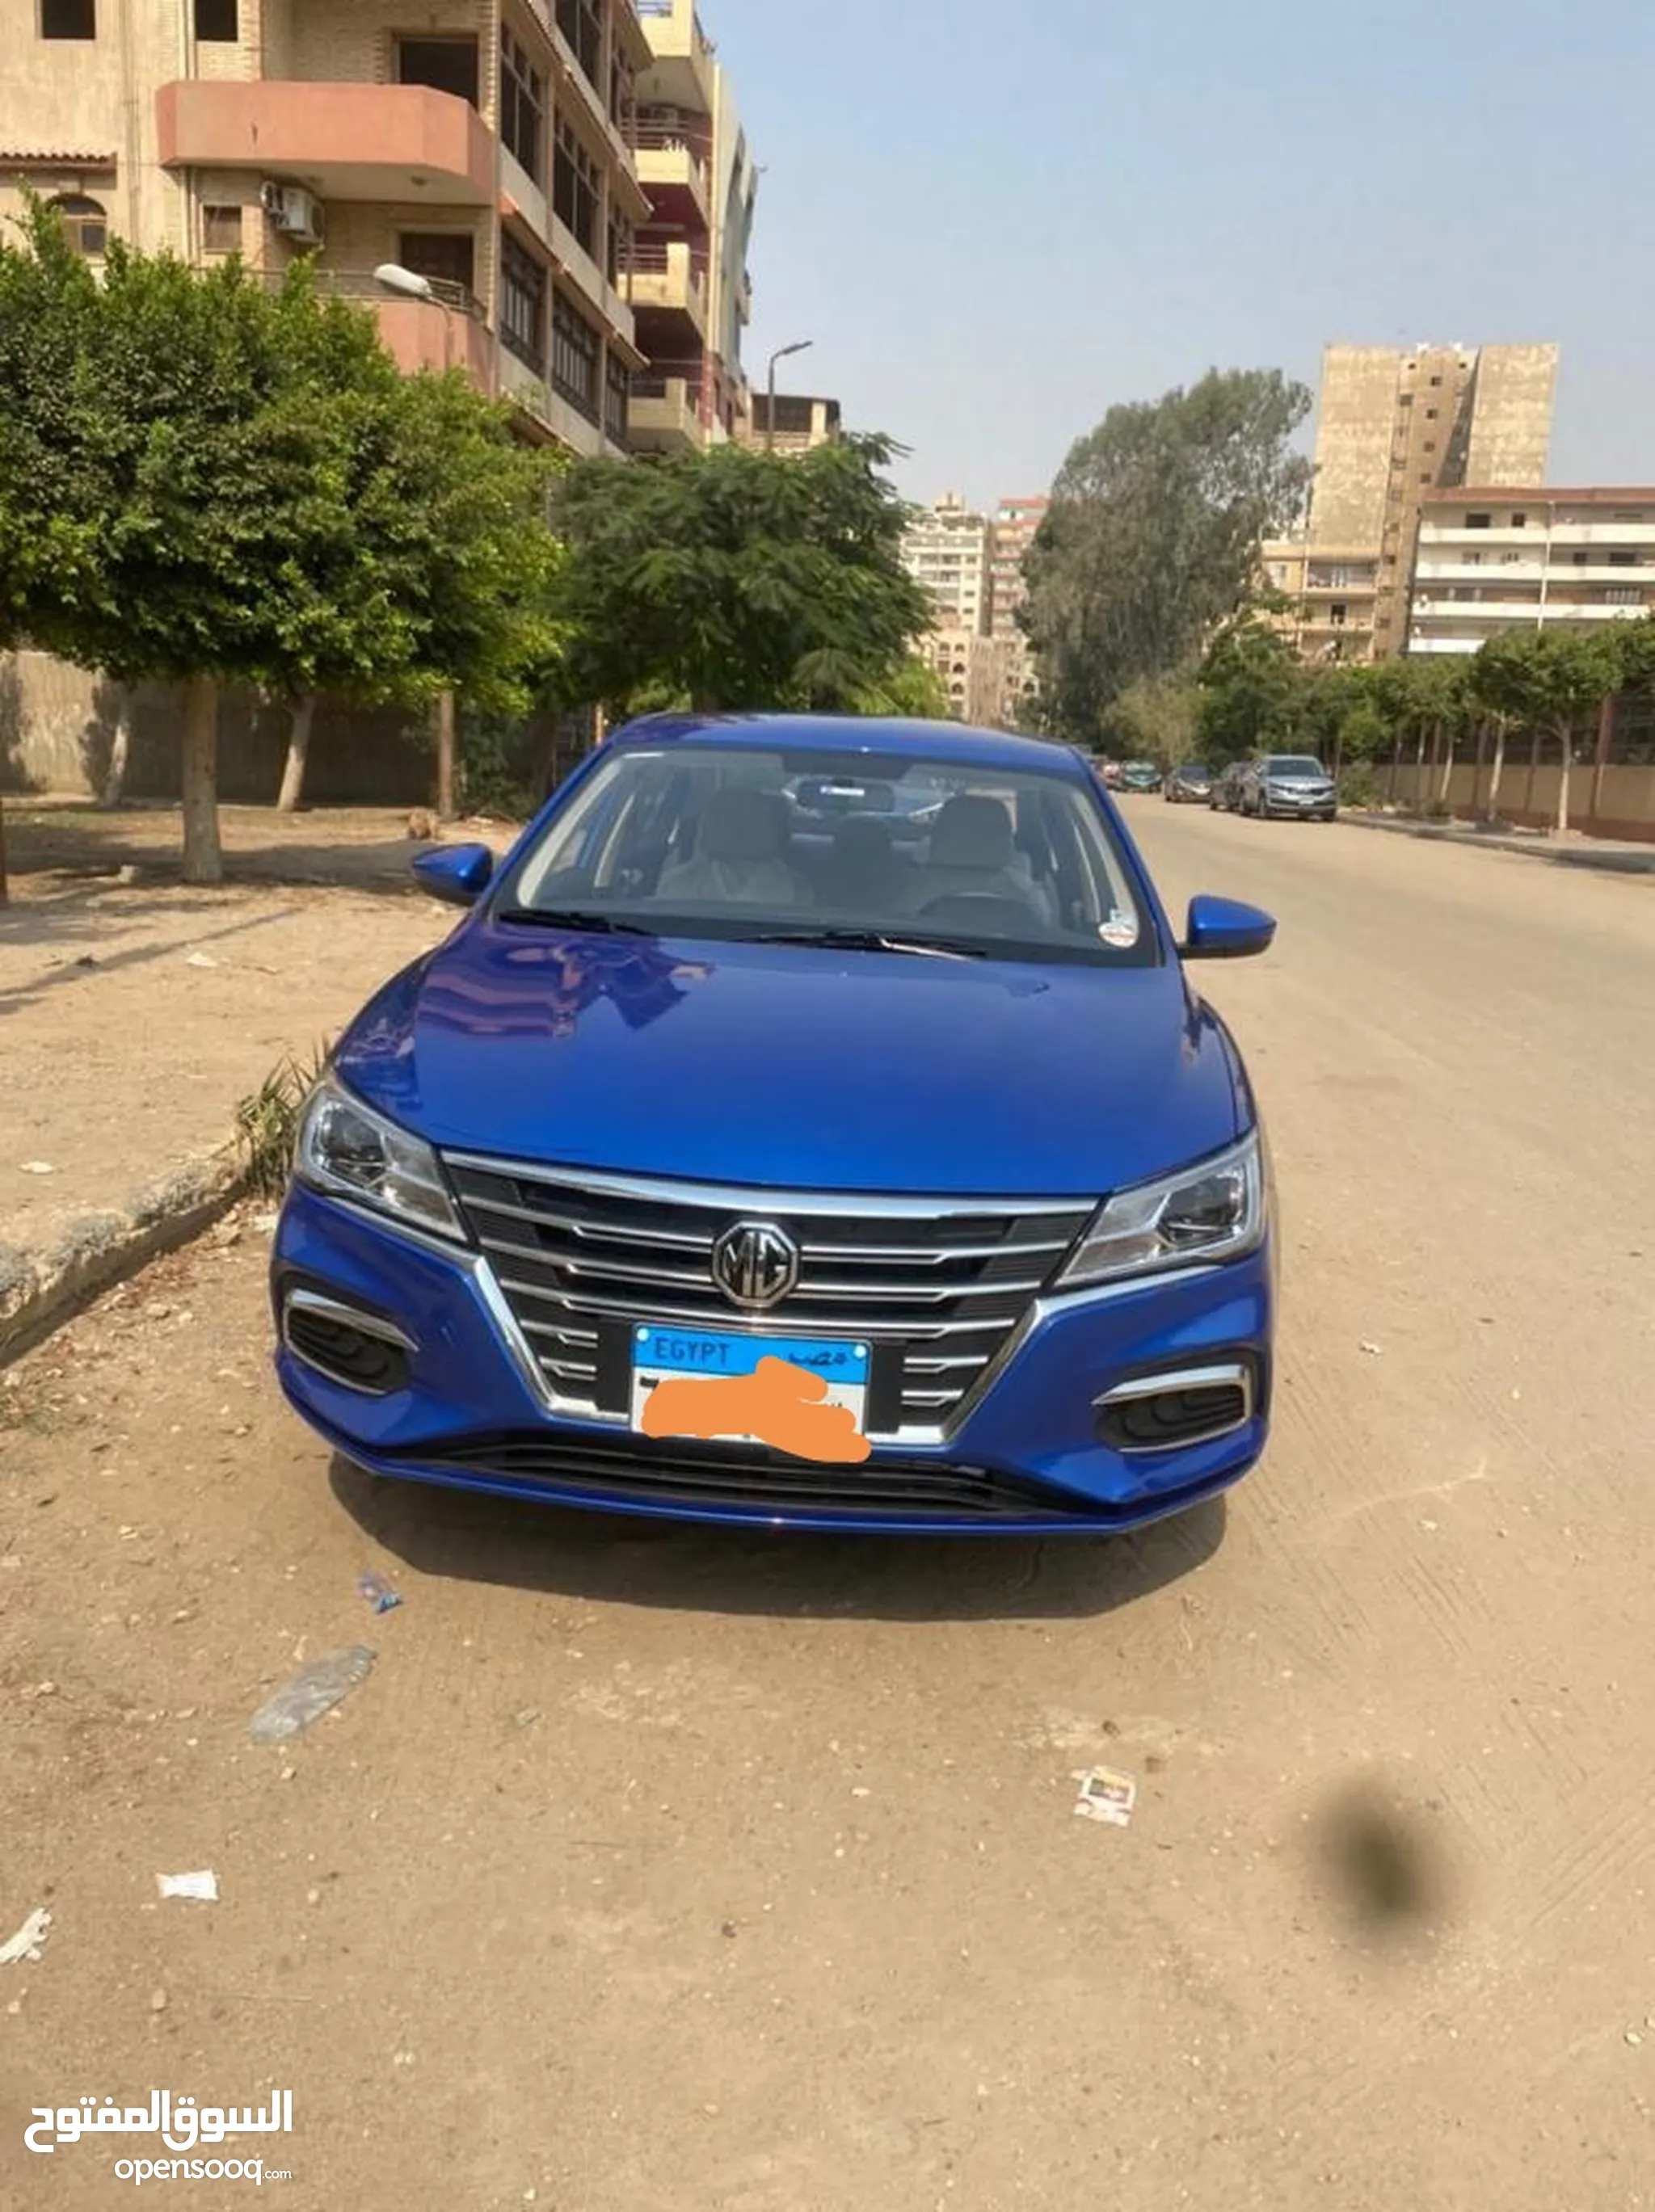 تأجير سيارات في مصر | تأجير للشركات | يومي وشهري بدون سائق | سيارة زفاف  للايجار | السوق المفتوح